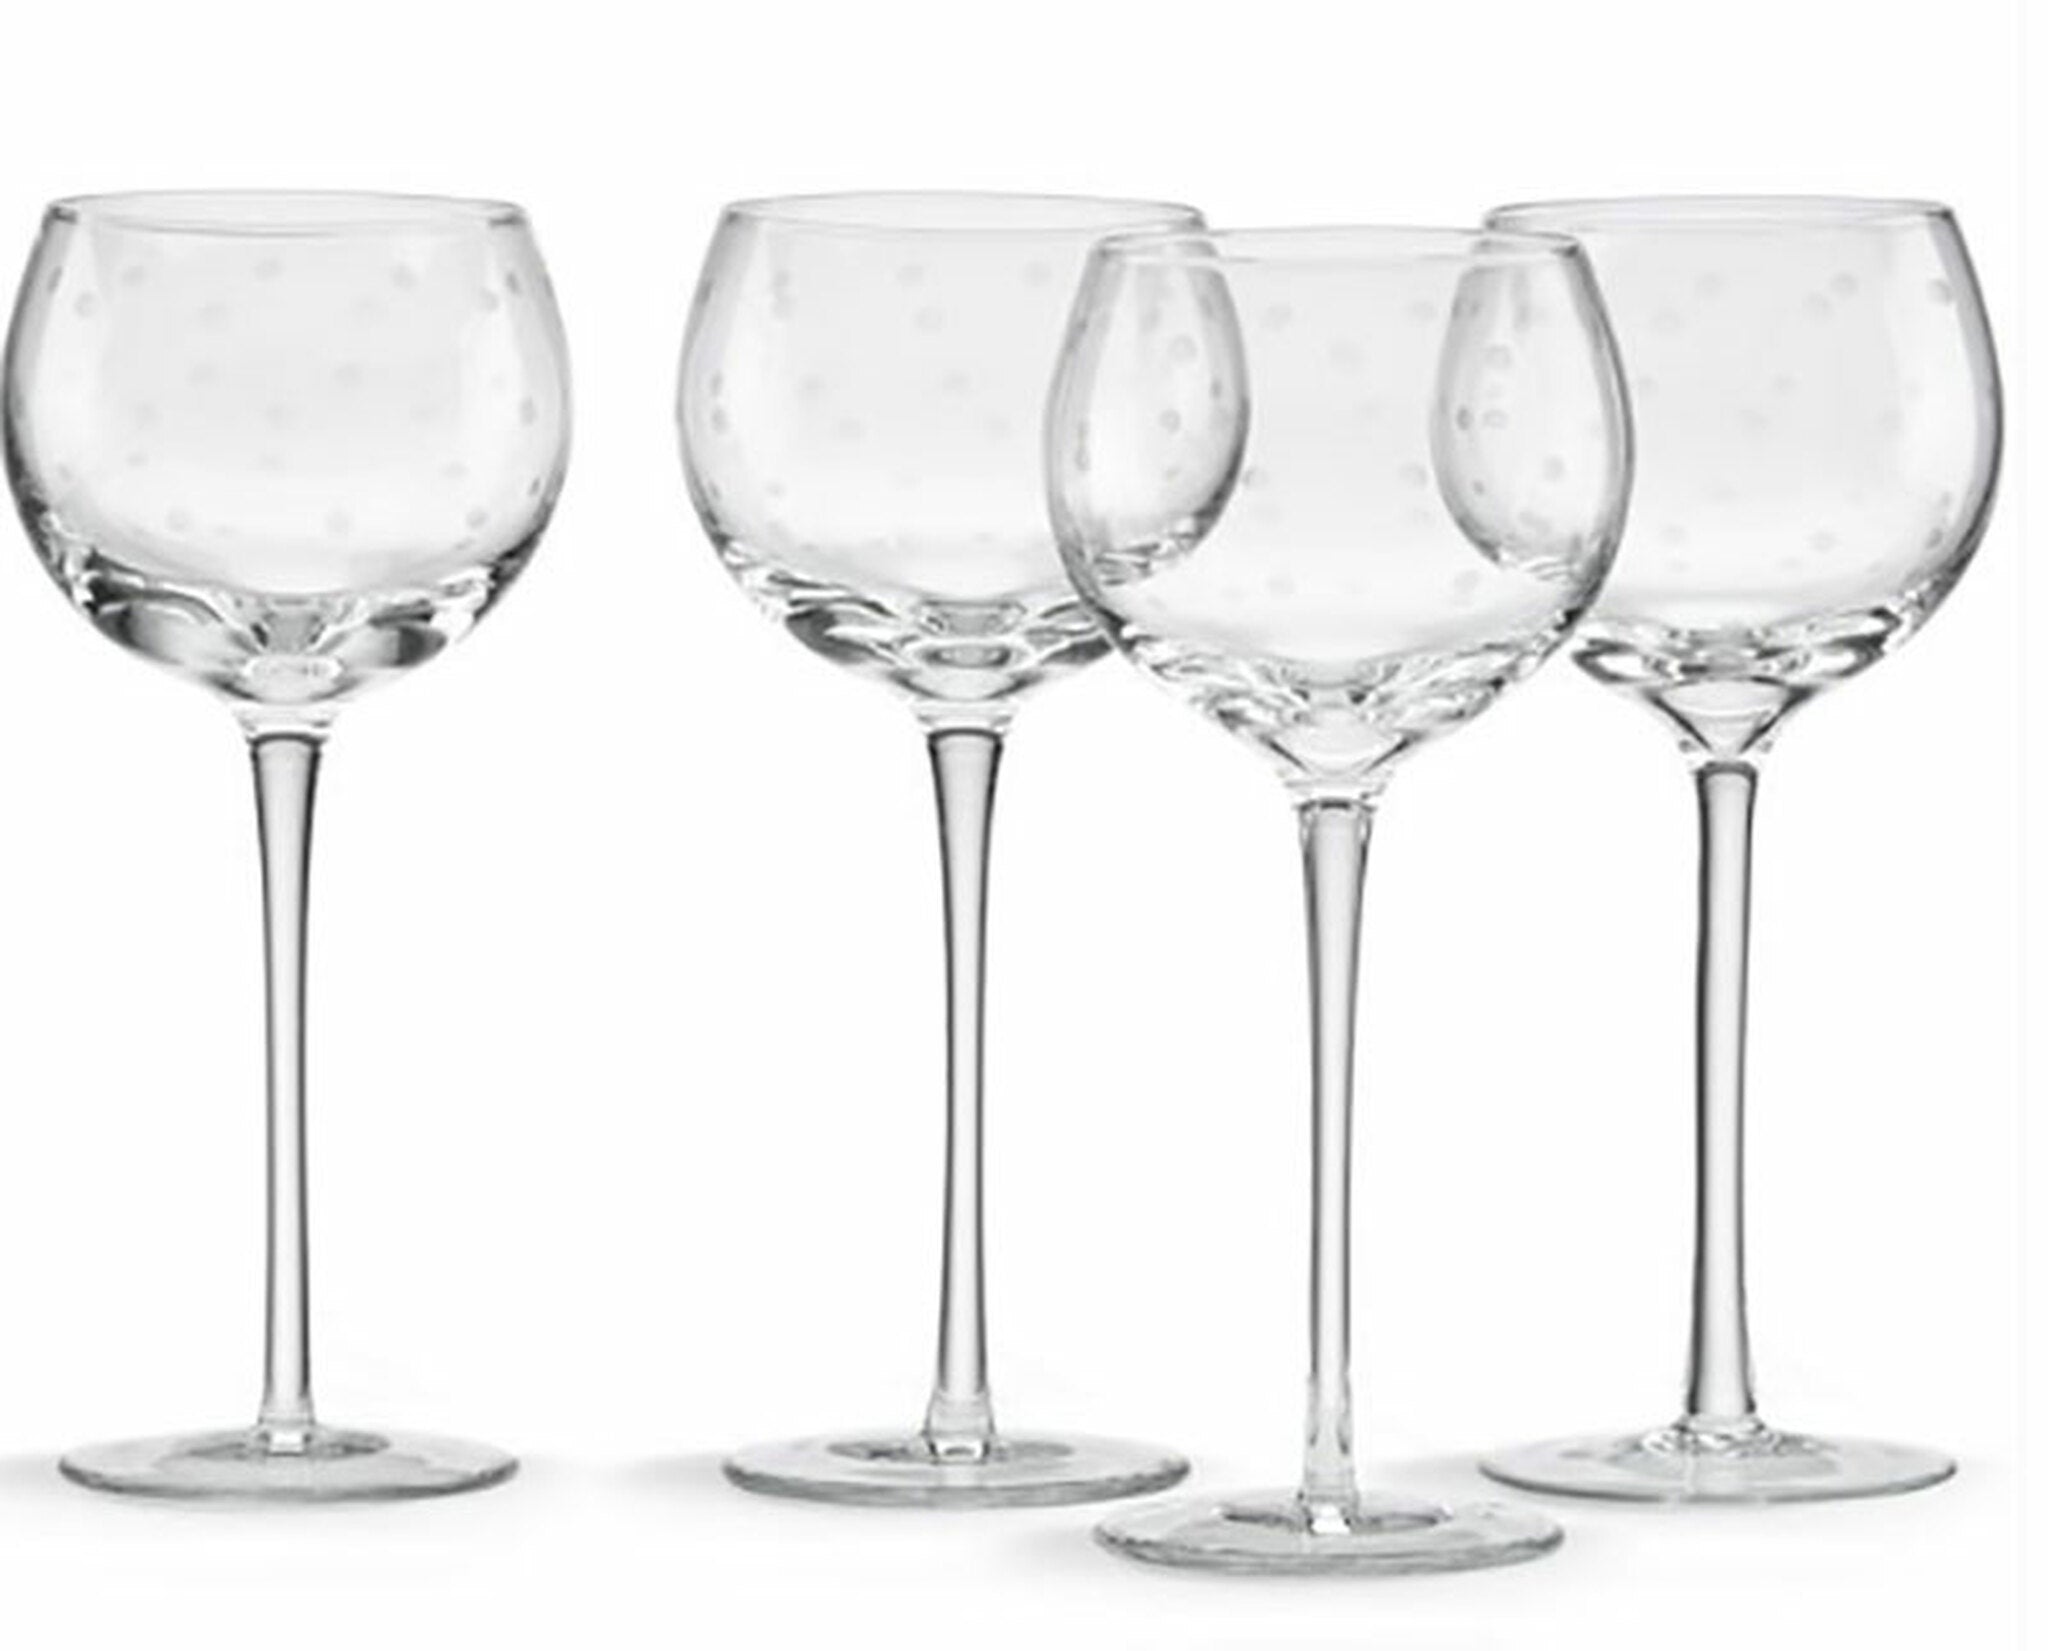 Larabee Dot Wine Glasses set of 4